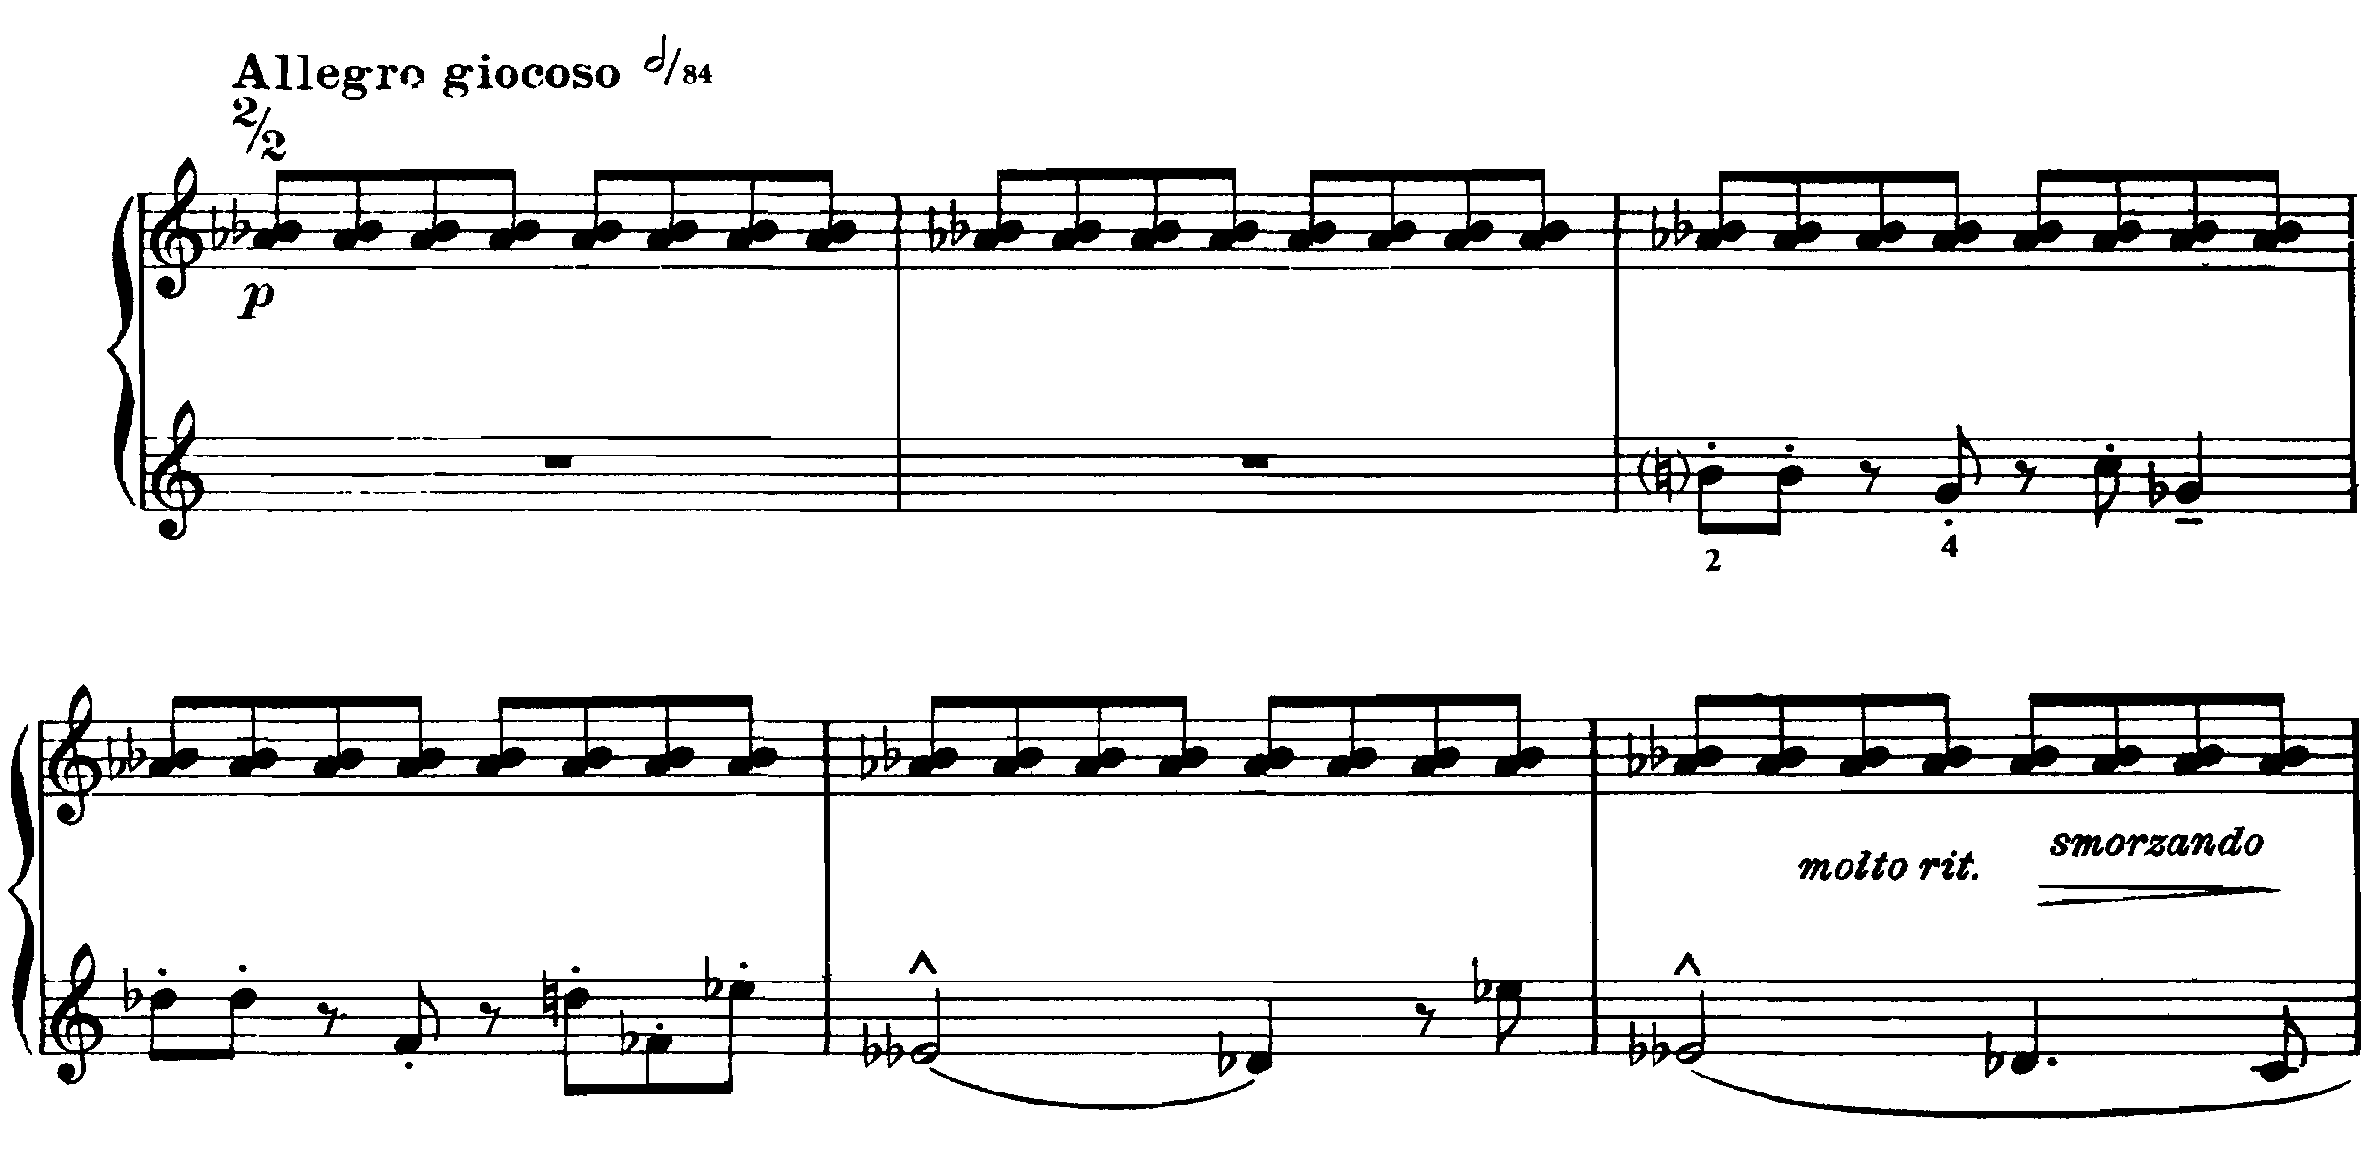 《小品曲》精簡而且聲音現代，摒棄傳統浪漫的寫法，精要地以音樂基本素材建構樂曲。第二小品曲左手的旋律，切分音型帶來獨特的節奏感，旋律圍繞着右手的頑固音型 (ostinato) 以半音向外伸展。一套 14 首的小品曲，被鋼琴家兼作曲家布梭尼 (Ferruccio Busoni) 形容為「最終出現真正新穎的音樂」。